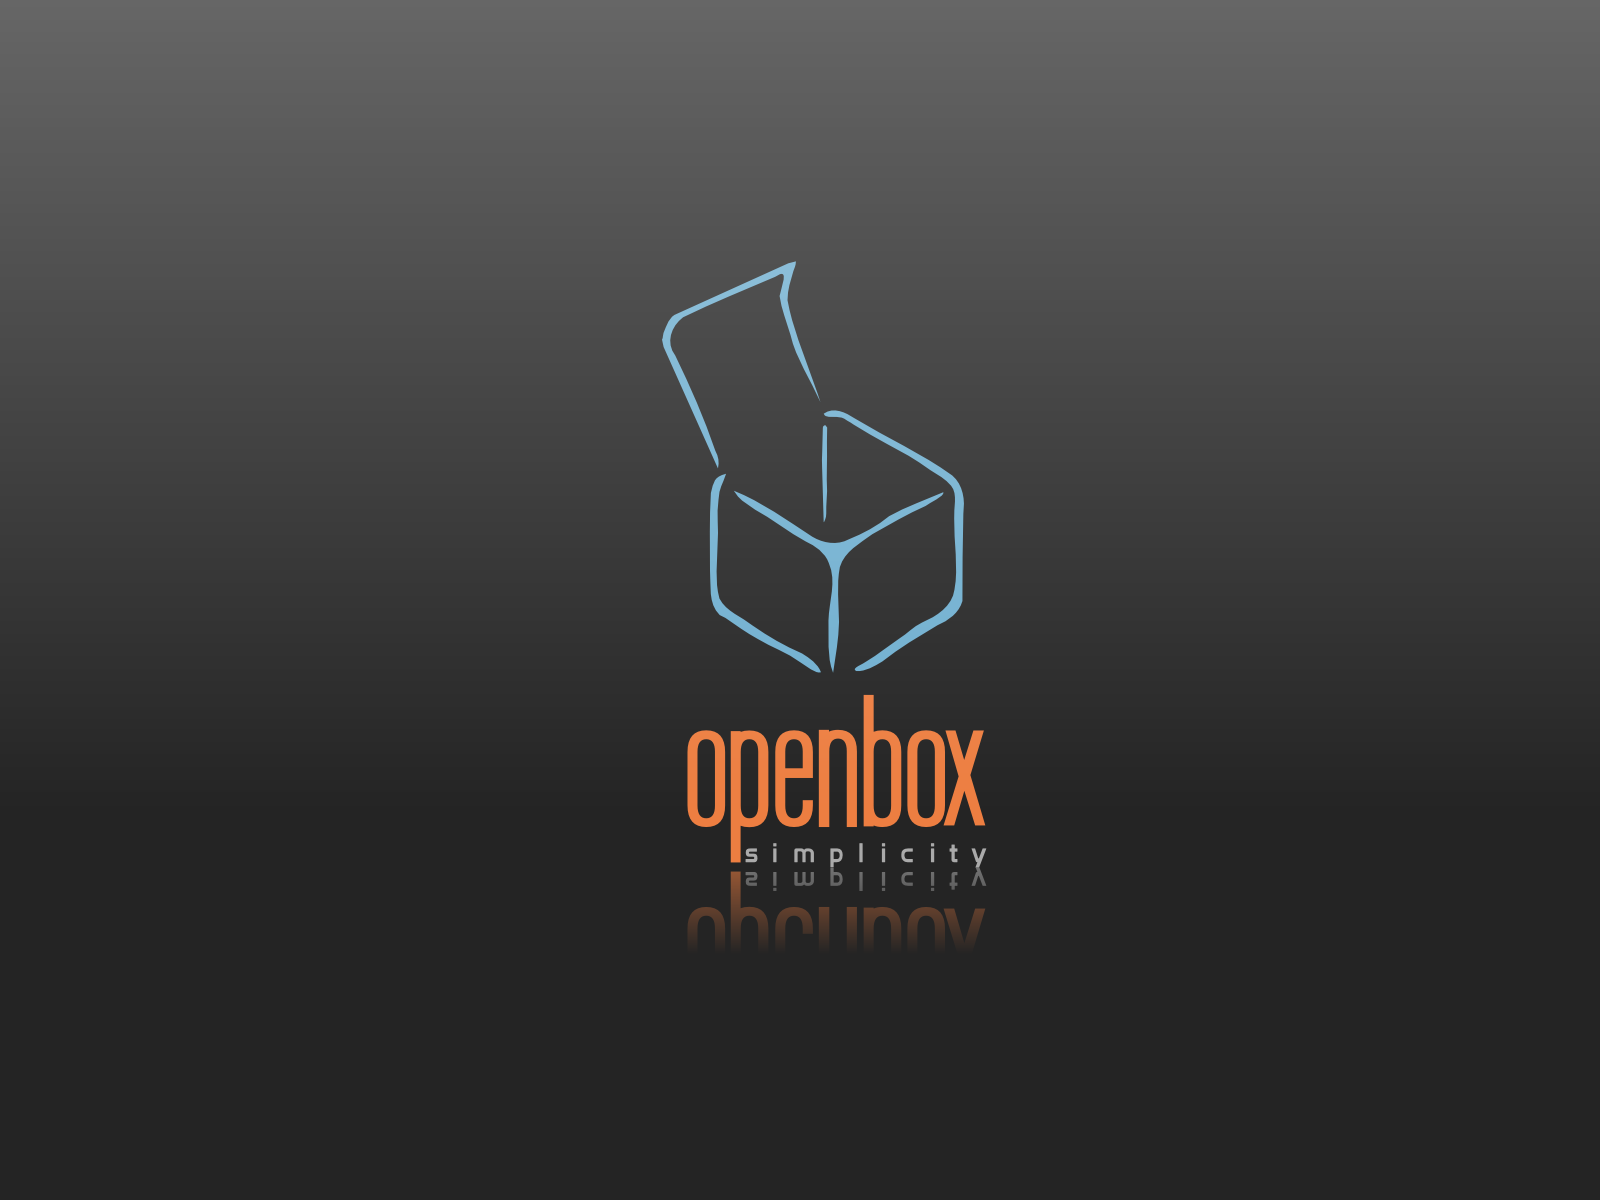 [obox-simplicity-1600x1200.png]